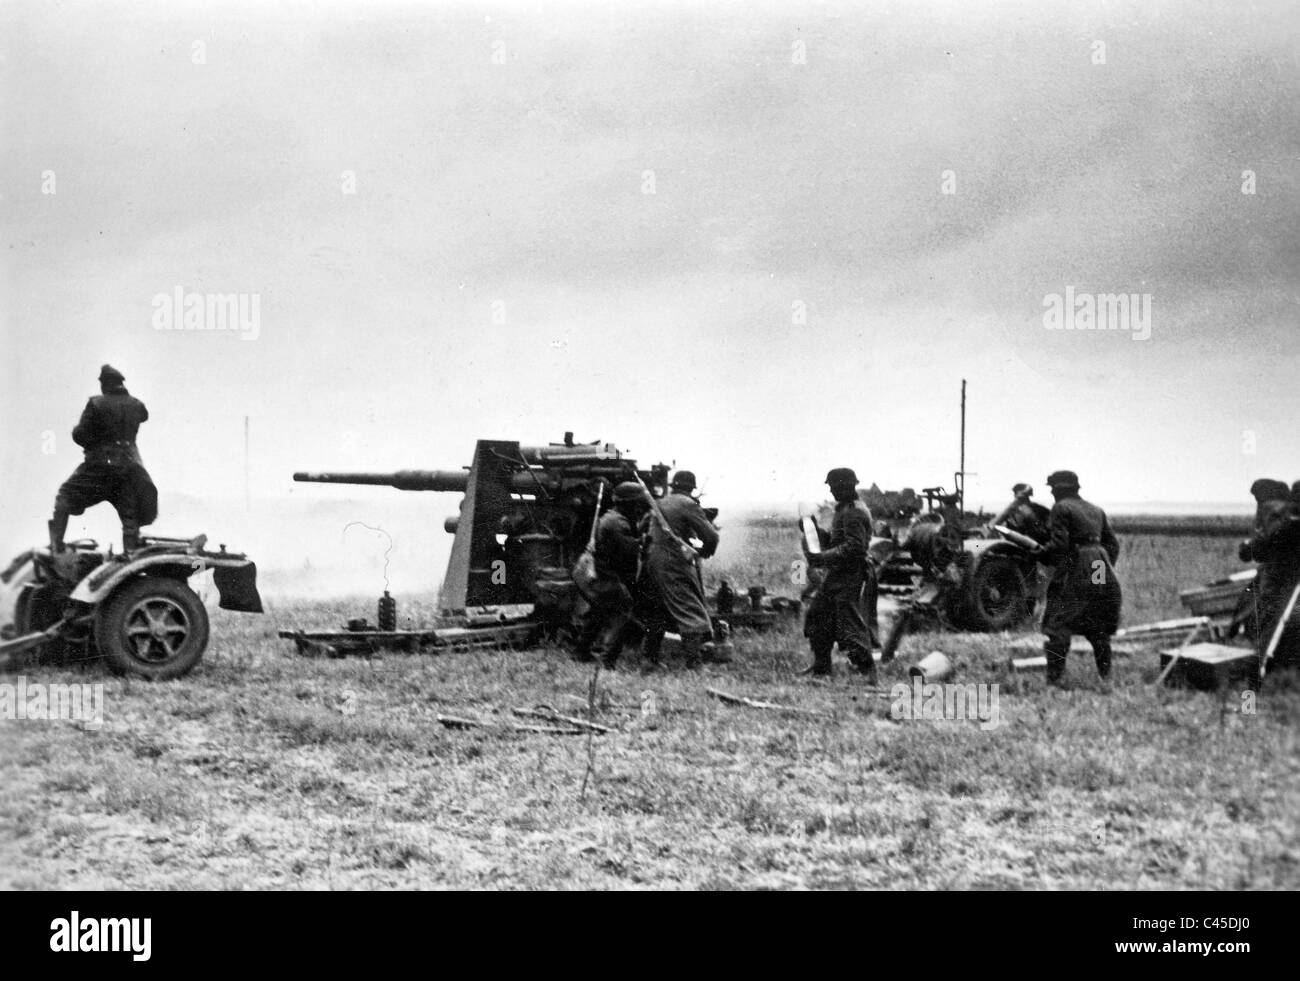 L'artillerie anti-aérienne allemande tire sur des chars russes, 1941 Banque D'Images